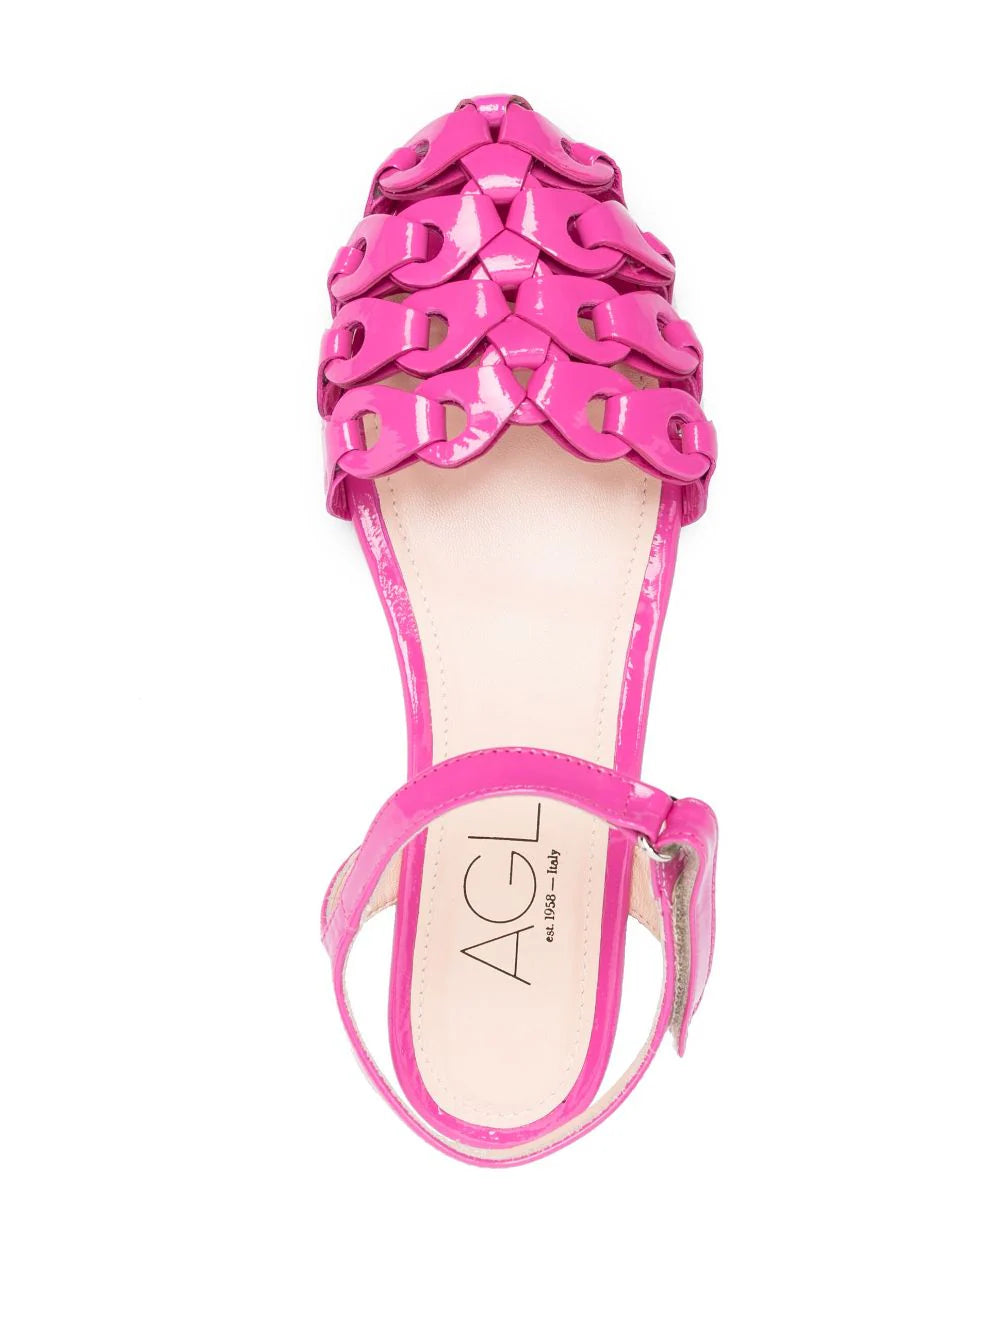 Petal straps sandal, flamingo